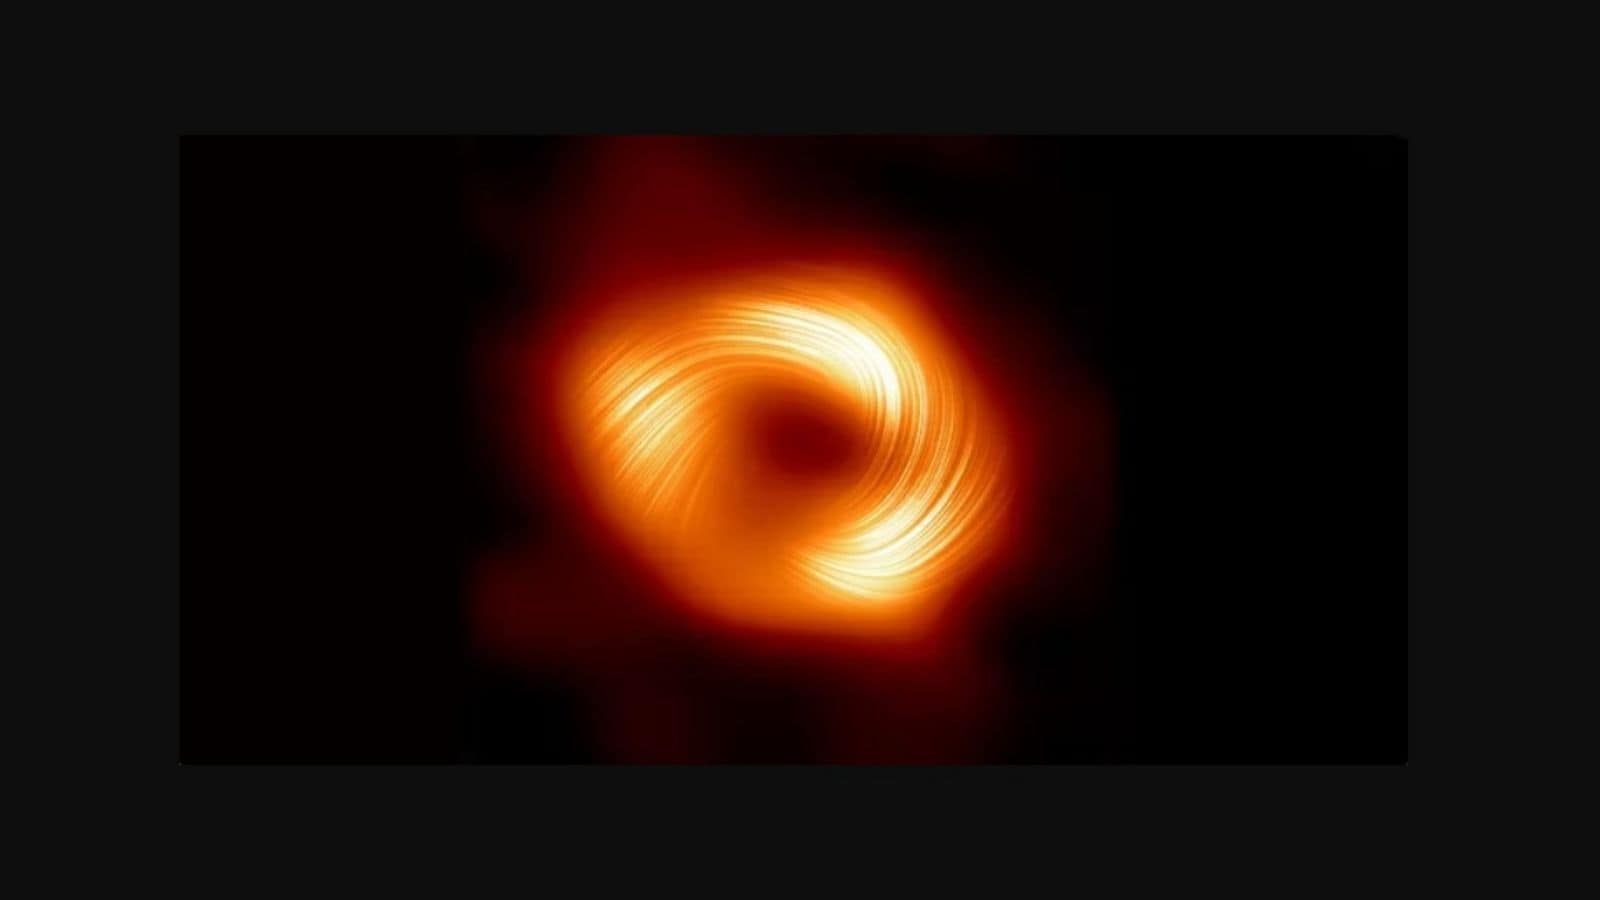 Le nuove immagini riprese dall'EHT di Sagittarius A*, il buco nero al centro della Via Lattea